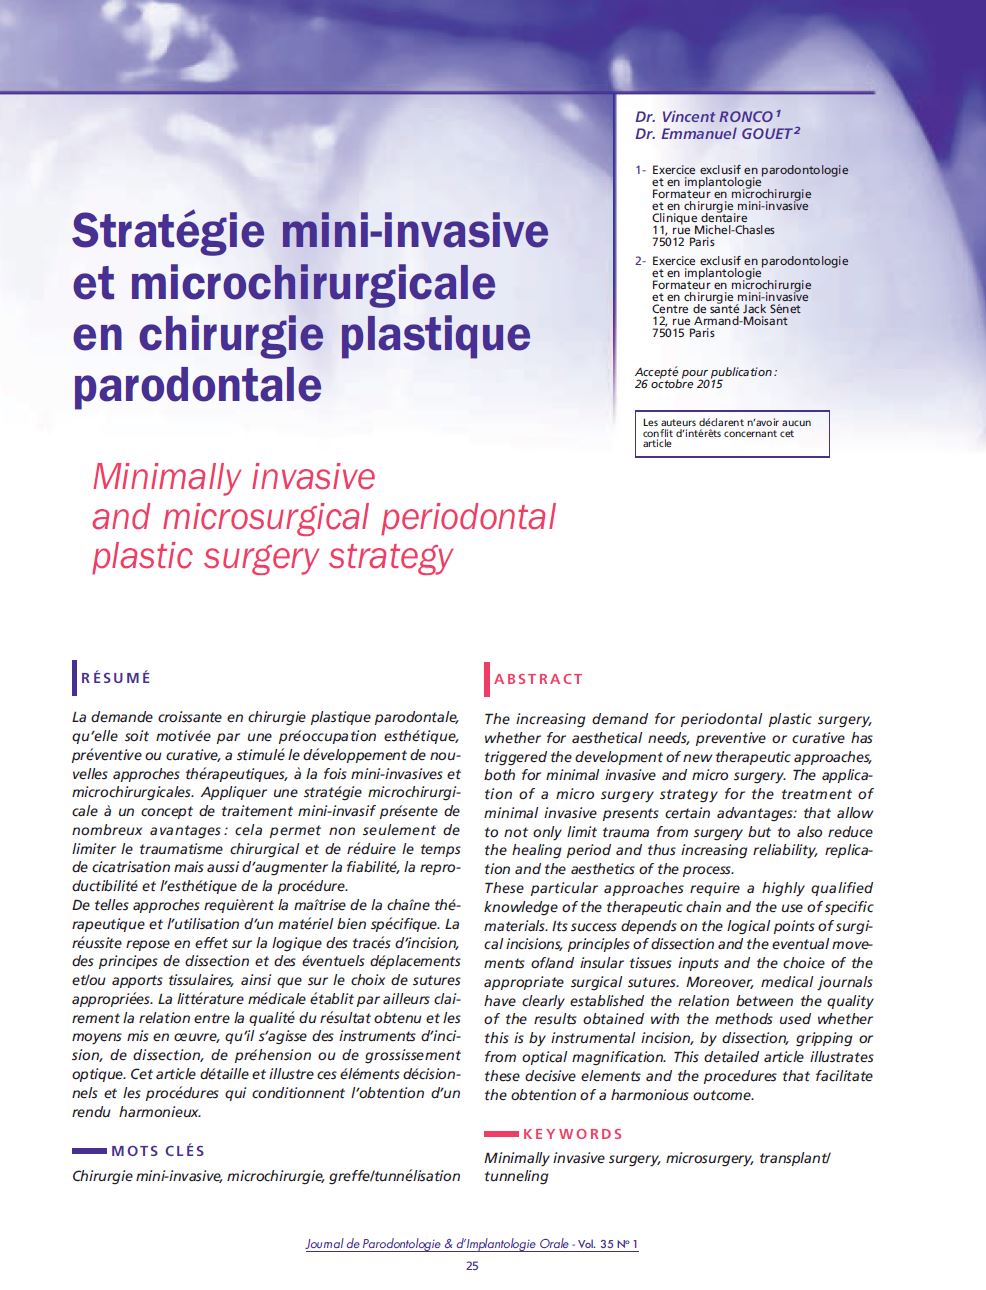 Stratégie mini-invasive et microchirurgicale en chirurgie plastique parodontale RONCO GOUET